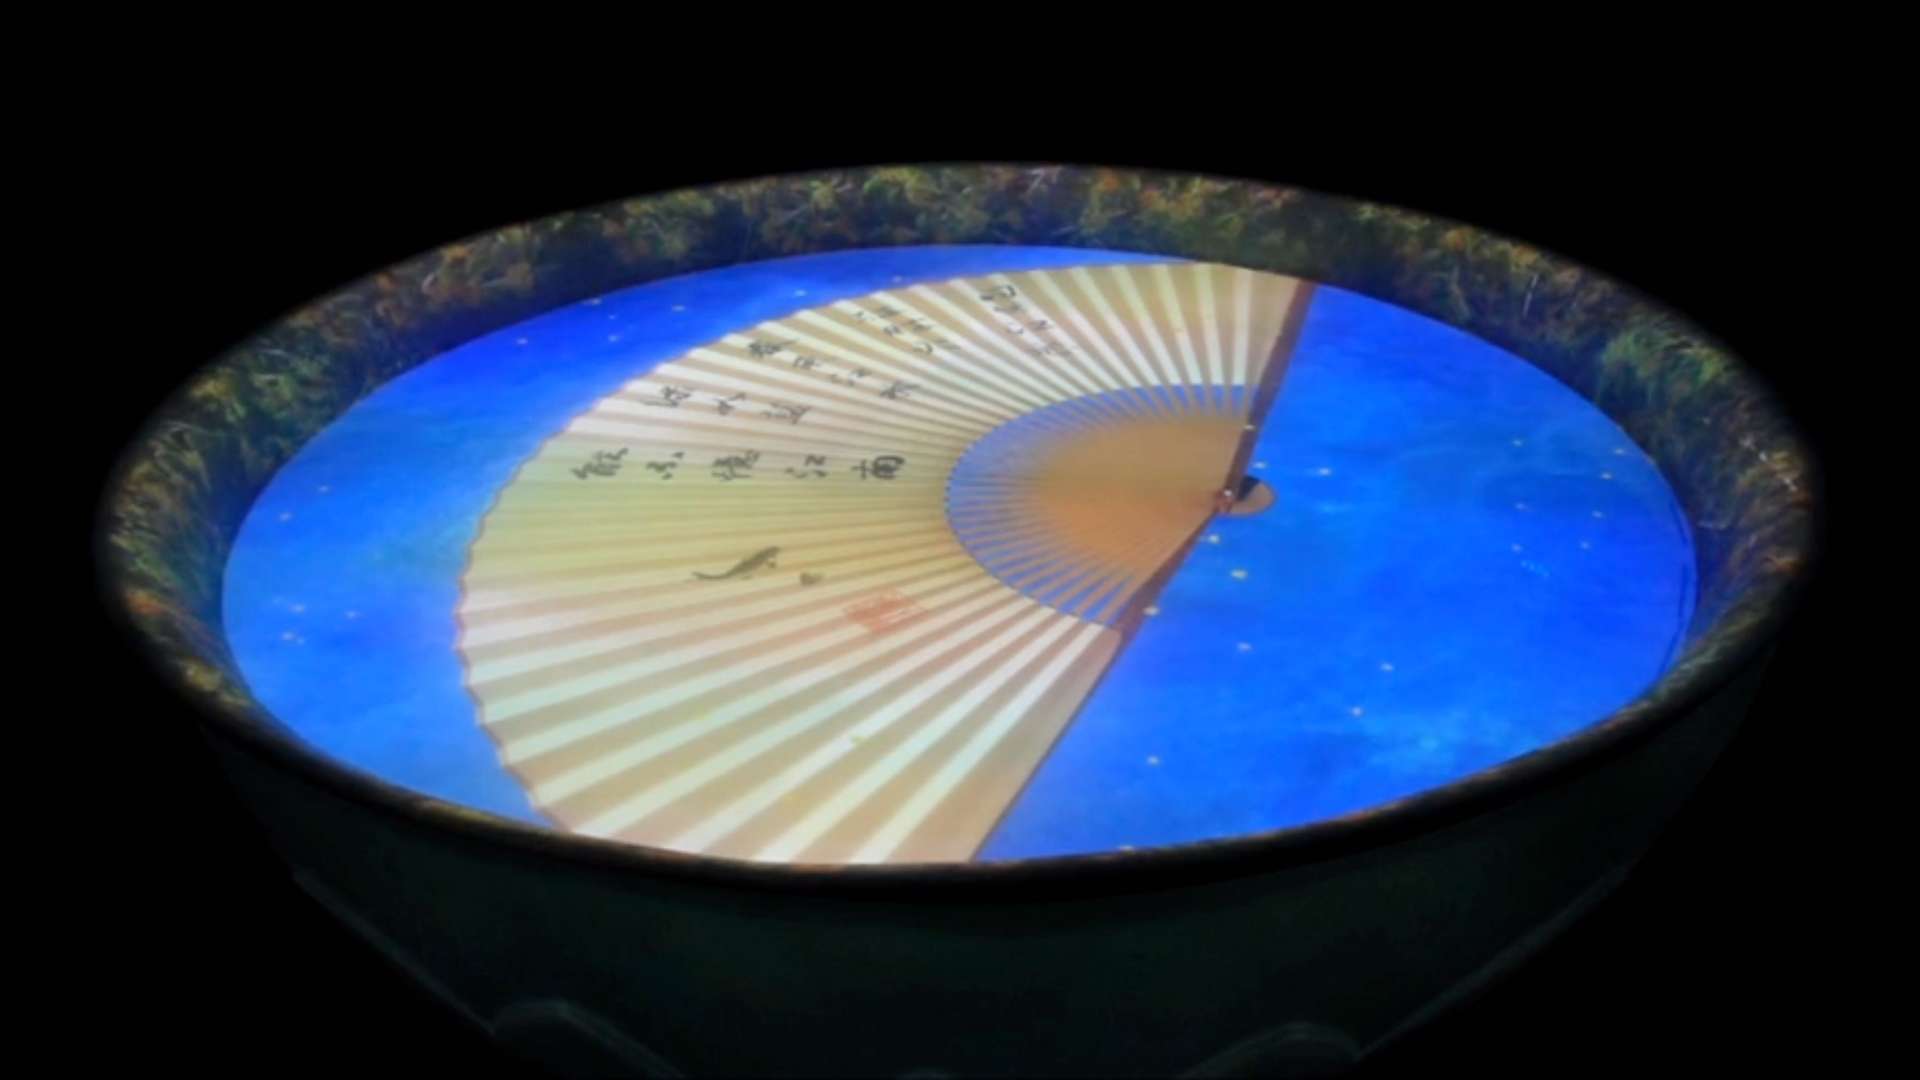 2010世博会-浙江馆 中国美术学院 展示馆 沉浸式展厅多媒体艺术创意水面投影